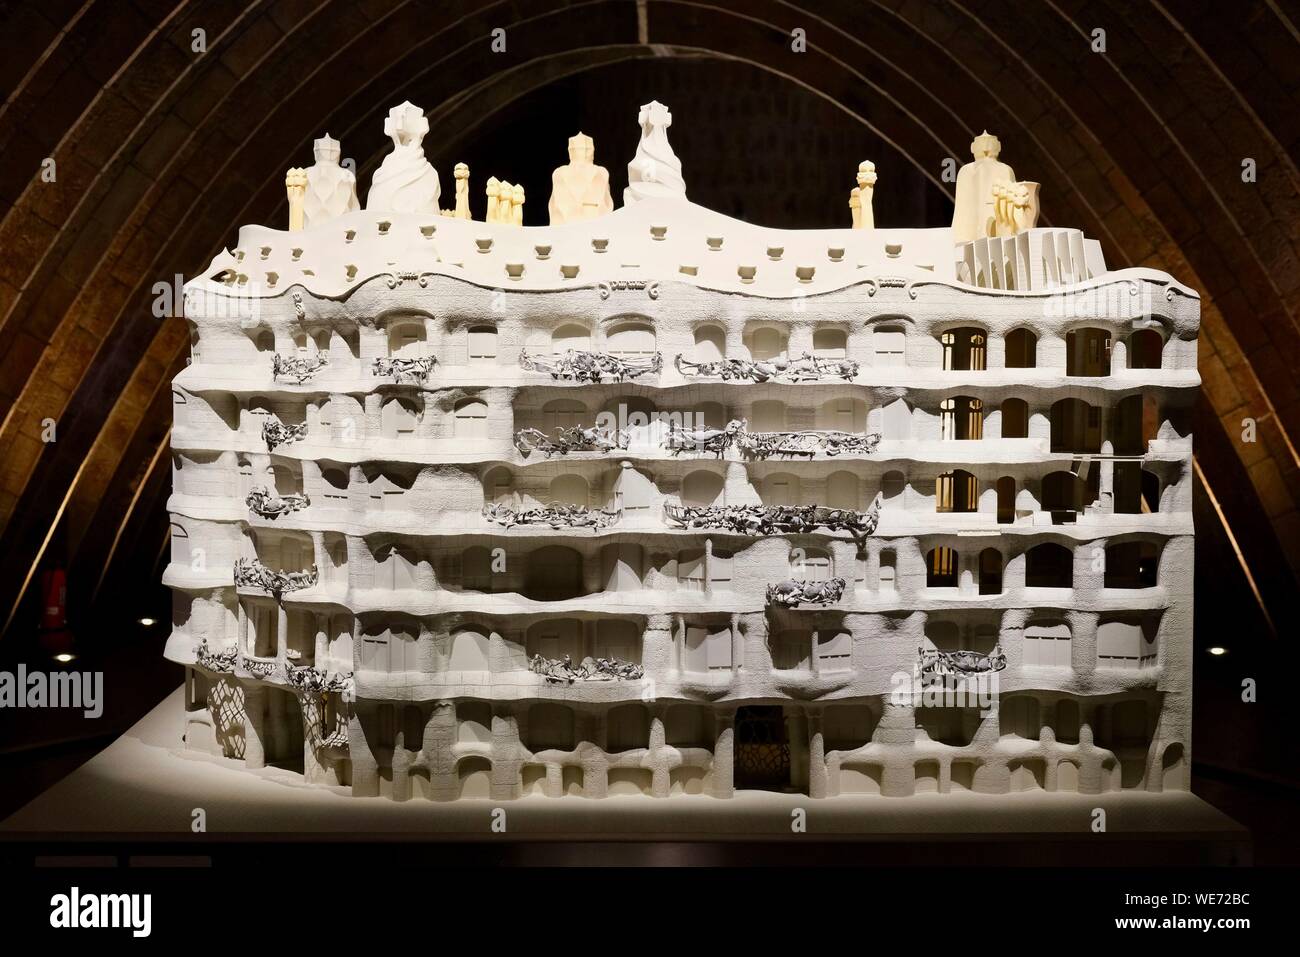 España, Cataluña, Barcelona, Eixample, la Pedrera (Casa Milá) por el arquitecto Antoni Gaudí, catalogada como Patrimonio de la Humanidad por la UNESCO, modelo Foto de stock